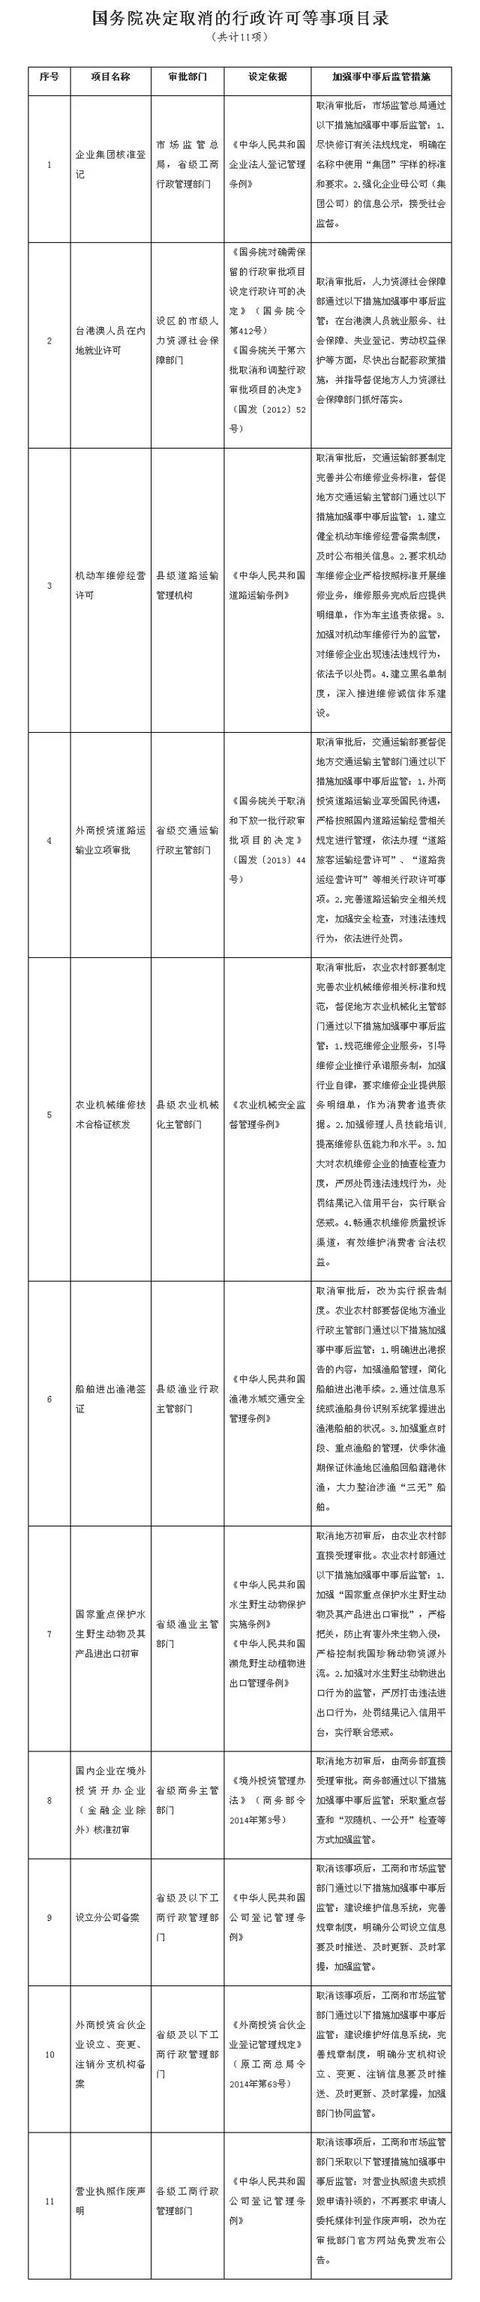 国务院关于取消一批行政许可等事项的决定(图1)